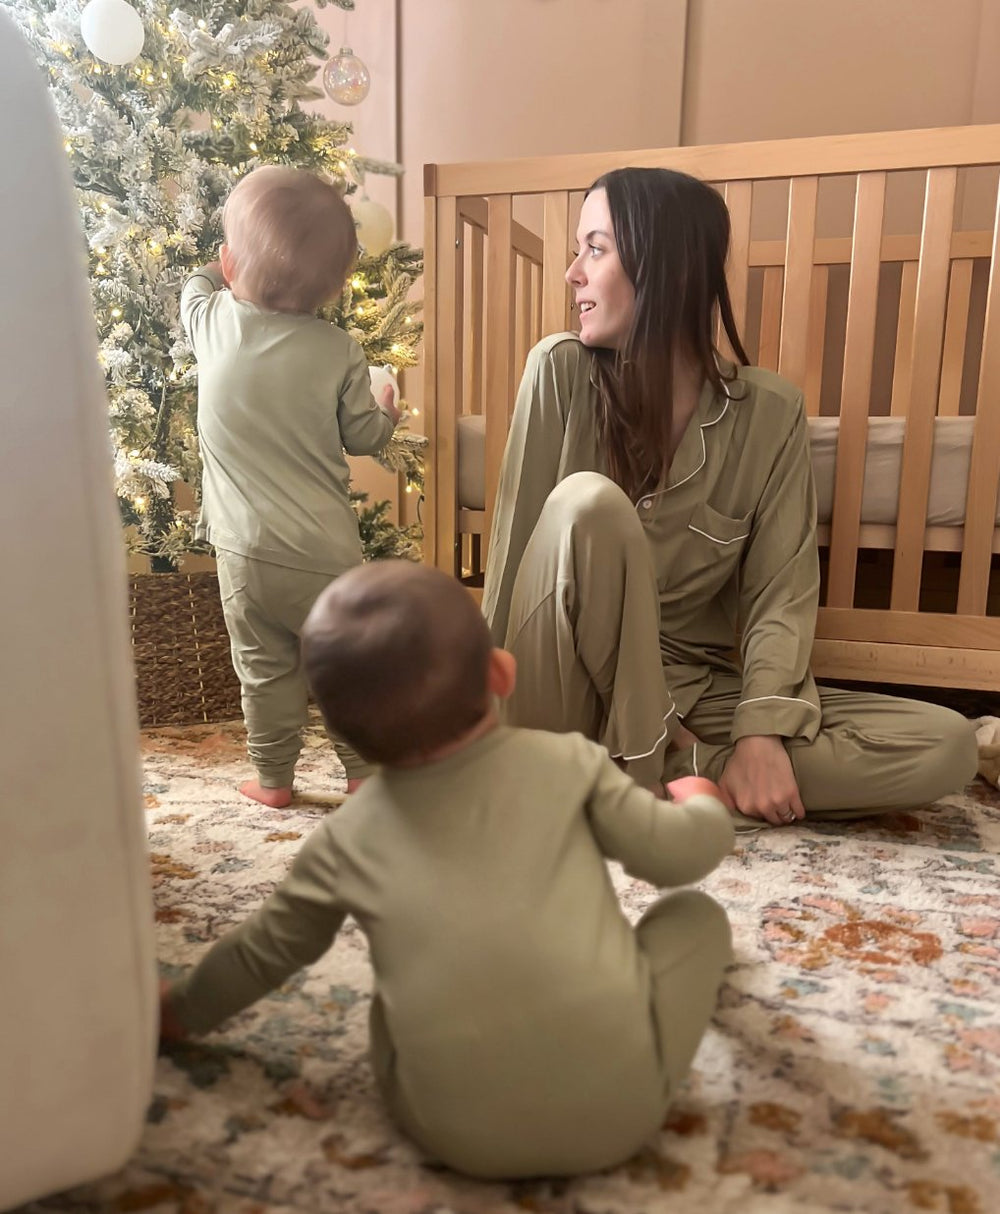 Women's Long Sleeve Pajama Set in Sage - Dear Perli